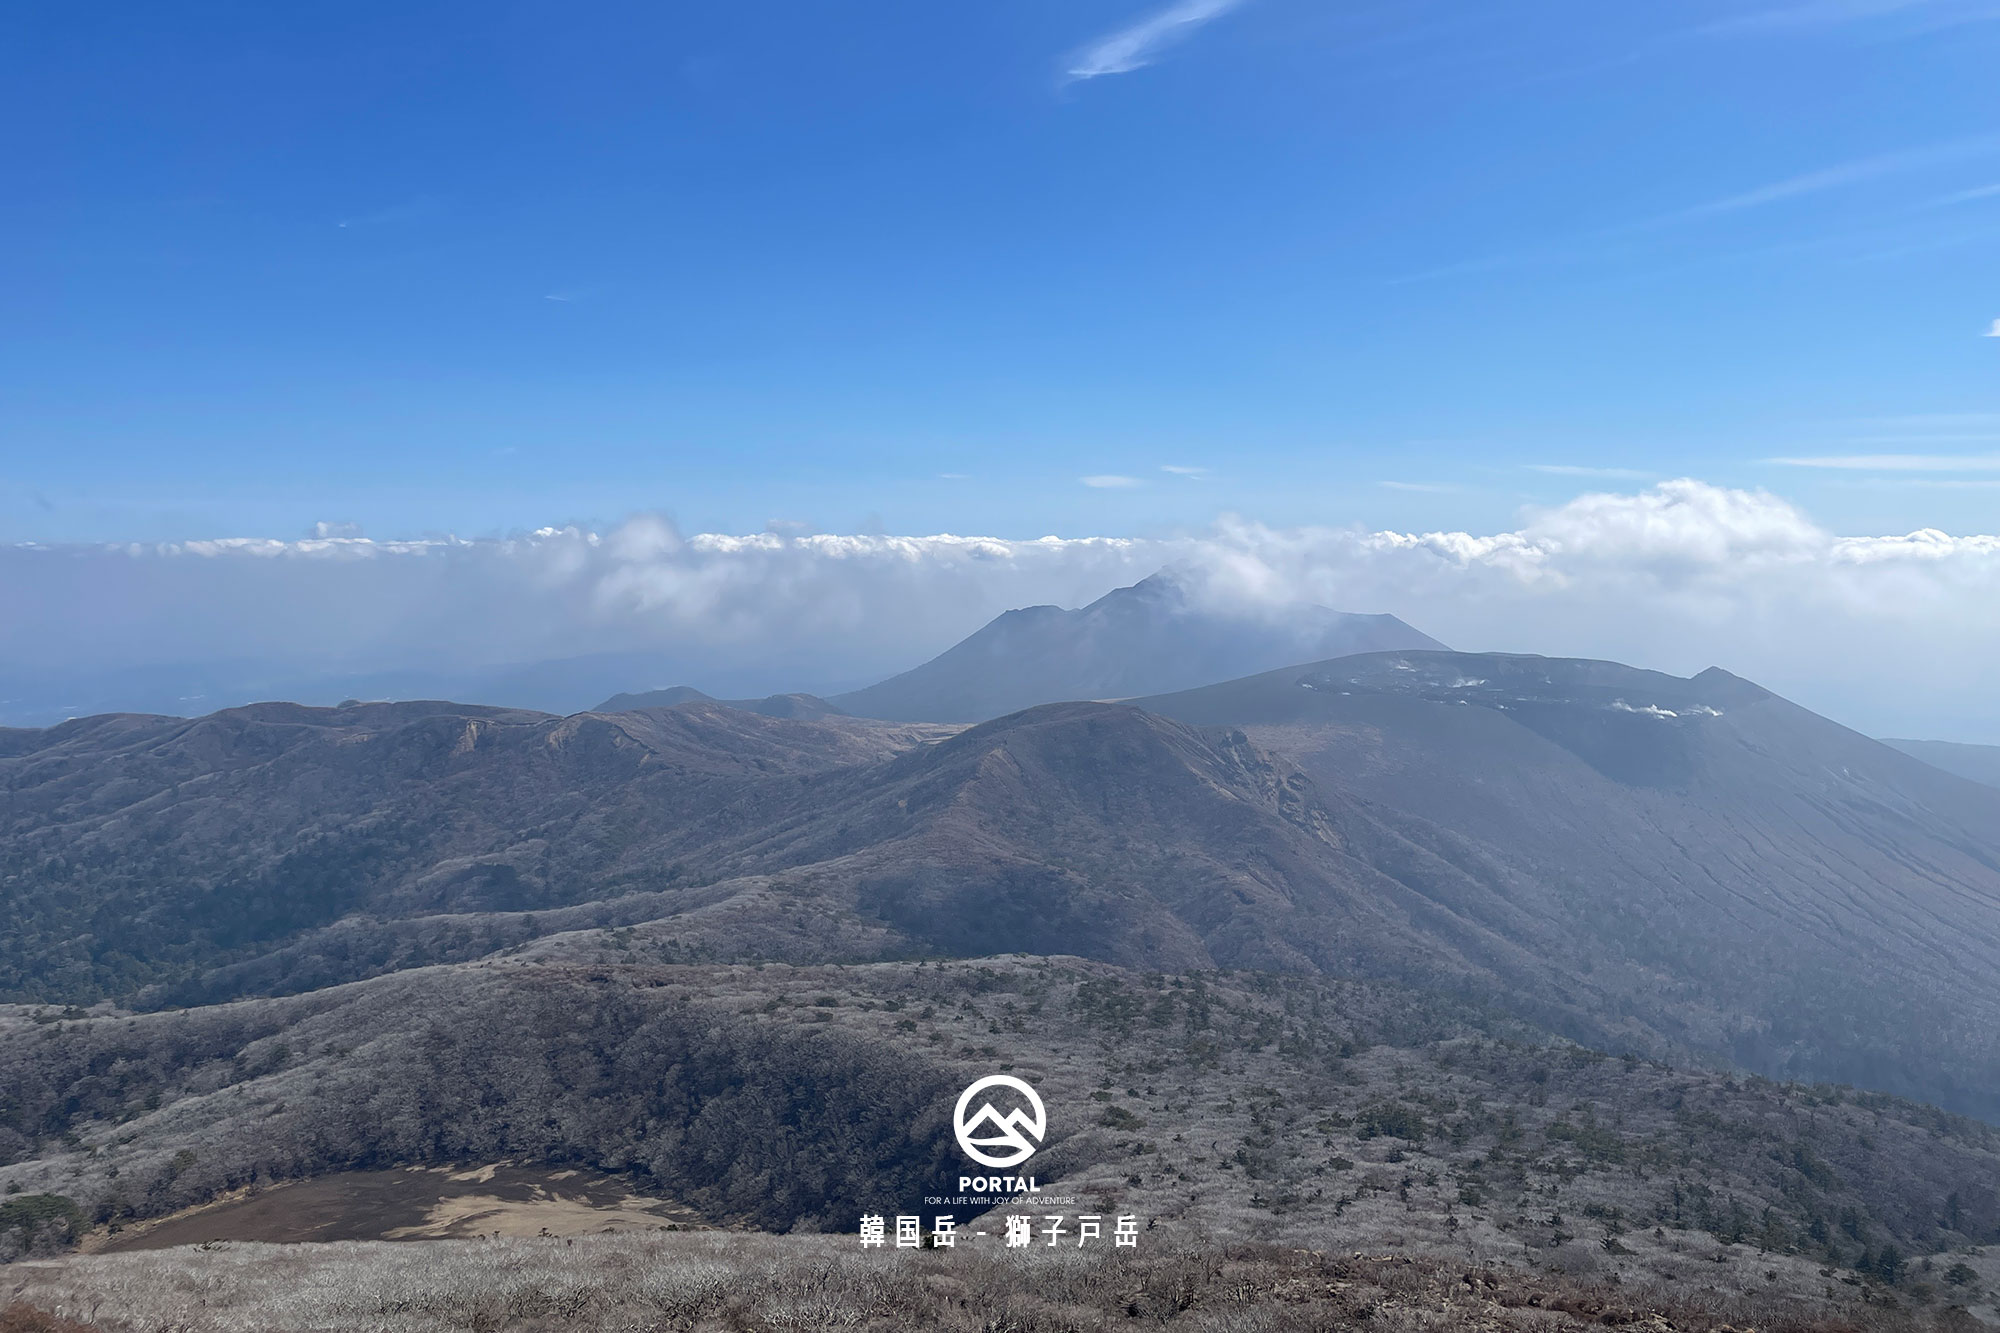 韓国岳から眺める獅子戸岳方面